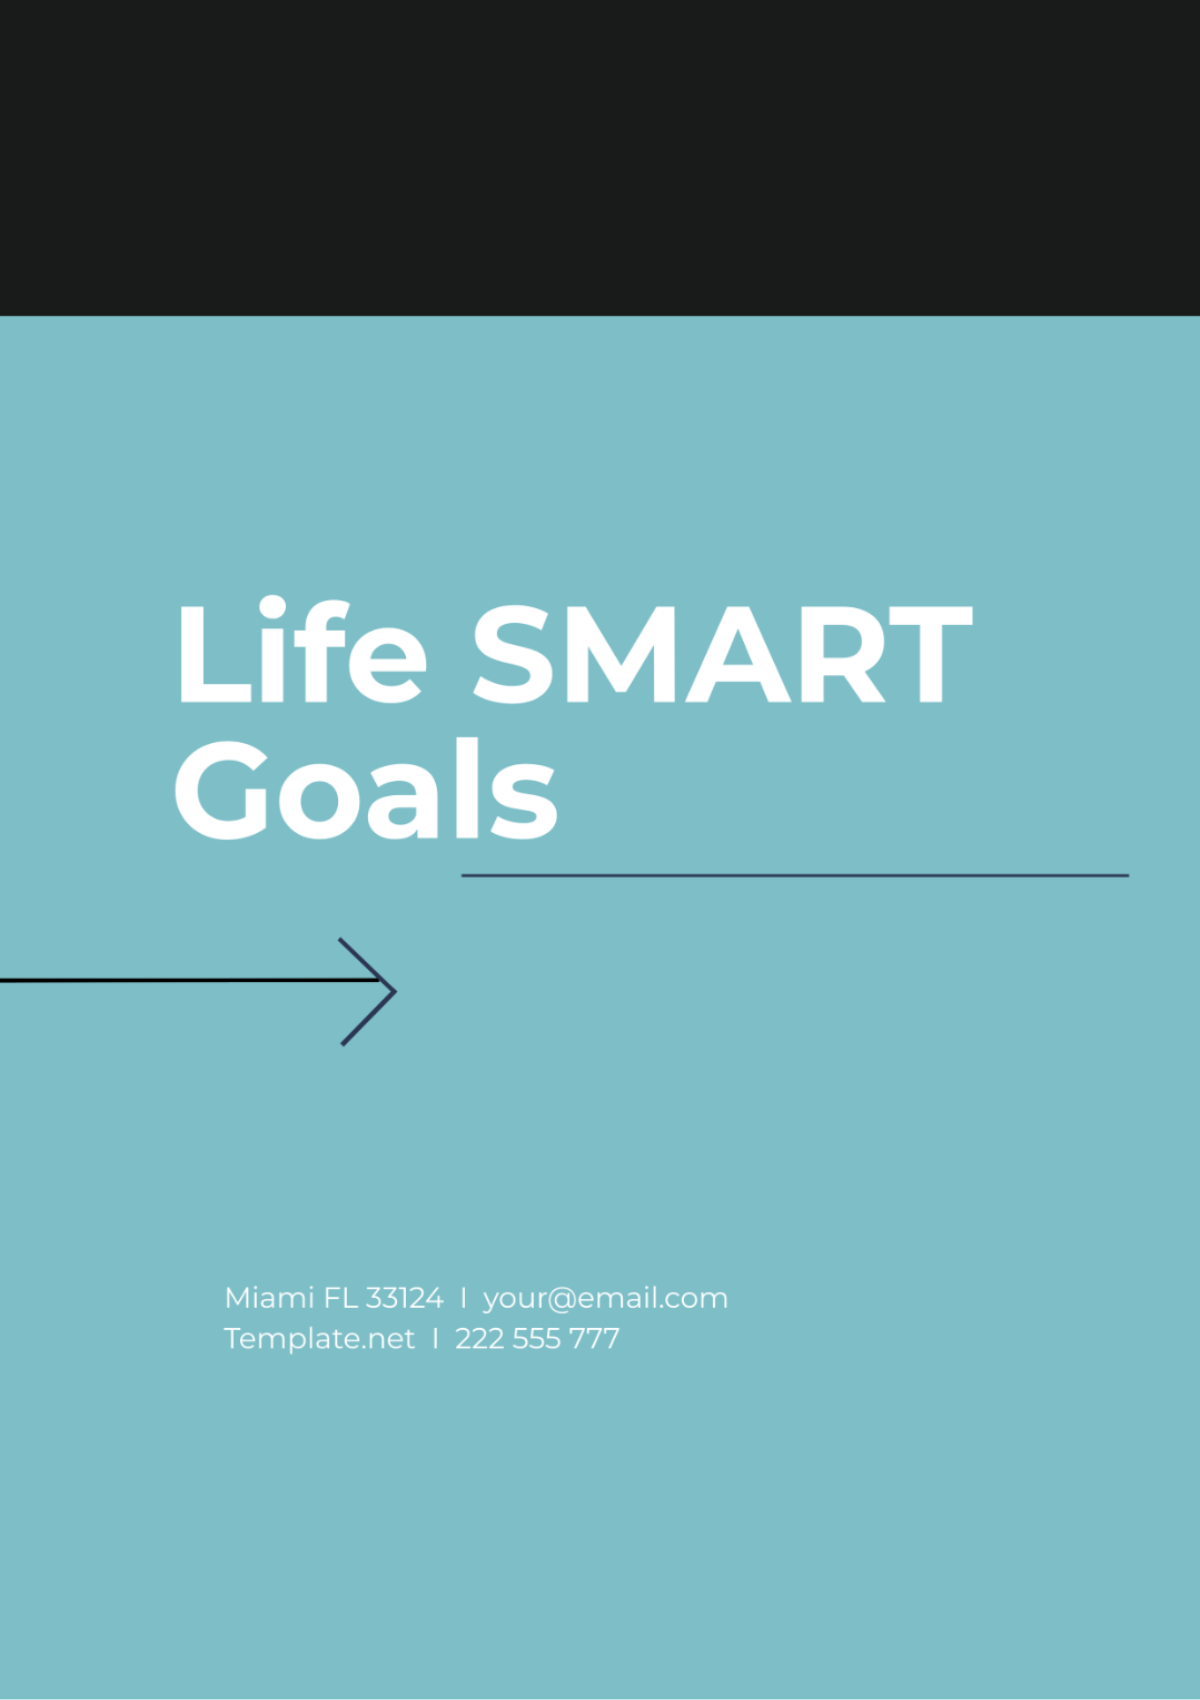 Life SMART Goals Template